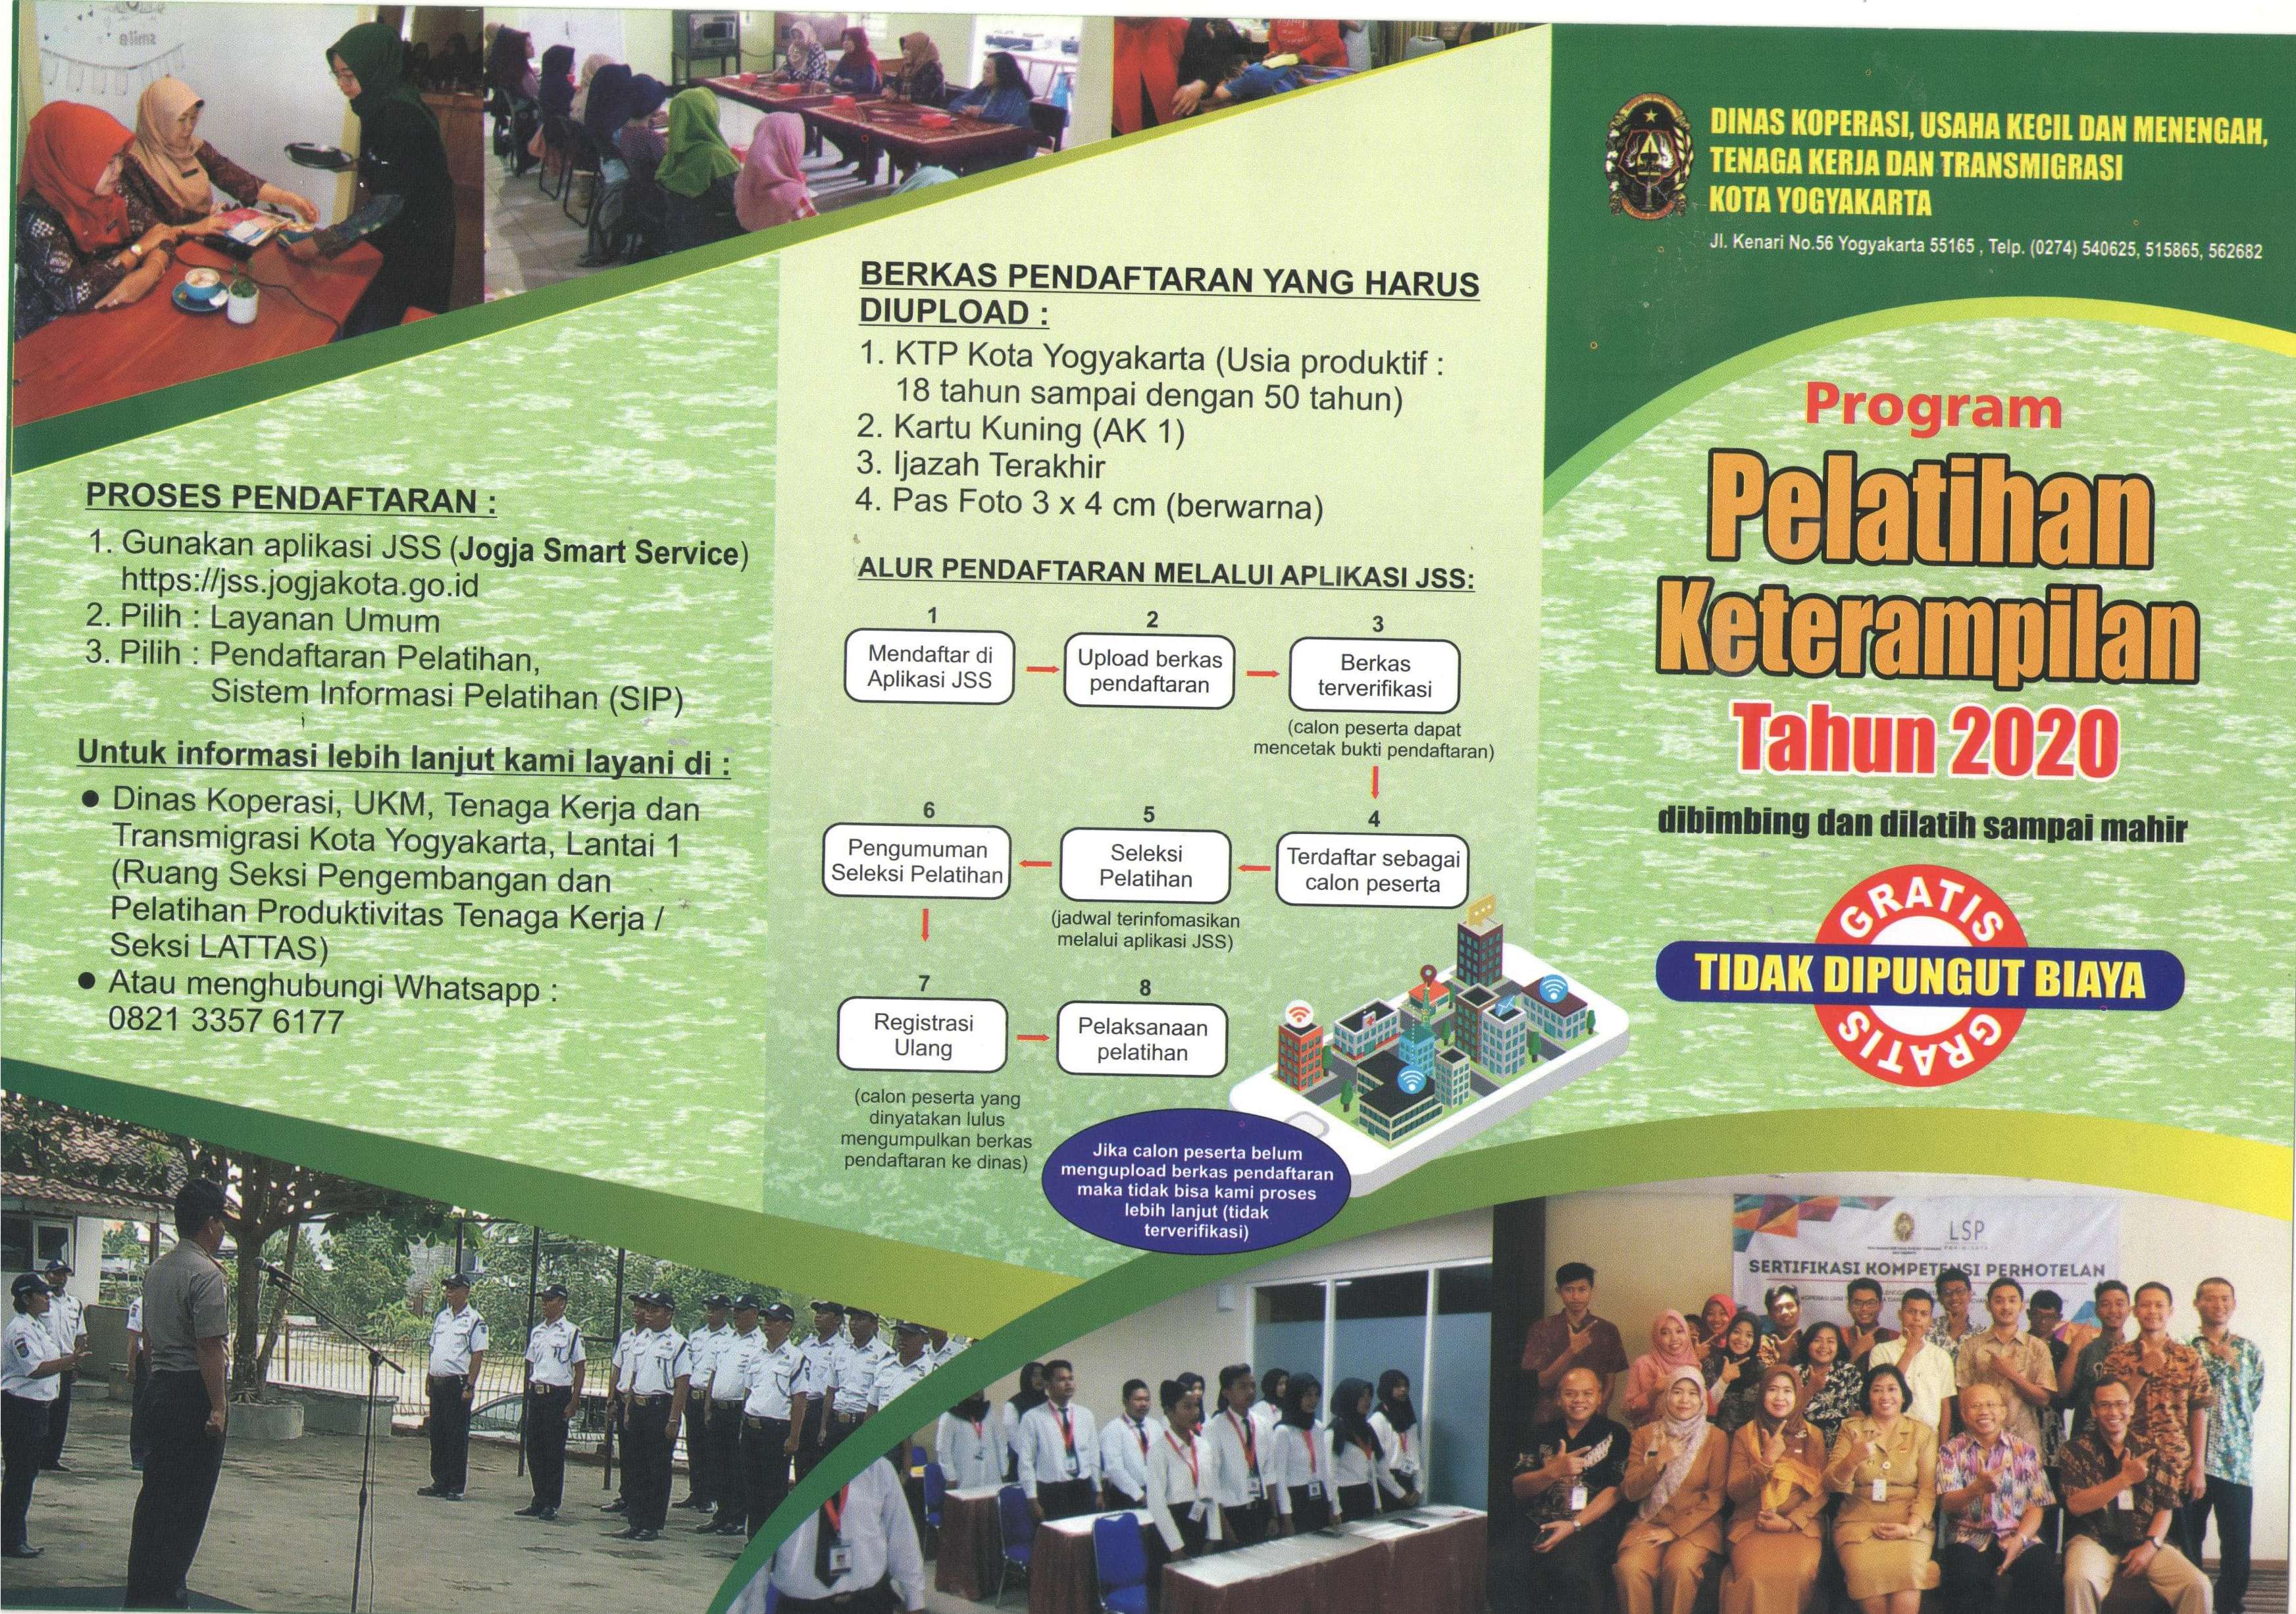 Program Pelatihan Ketrampilan Tahun 2020 dari Dinas Koperasi, Usaha Kecil dan Menengah, Tenaga Kerja dan Transmigrasi Kota Yogyakarta